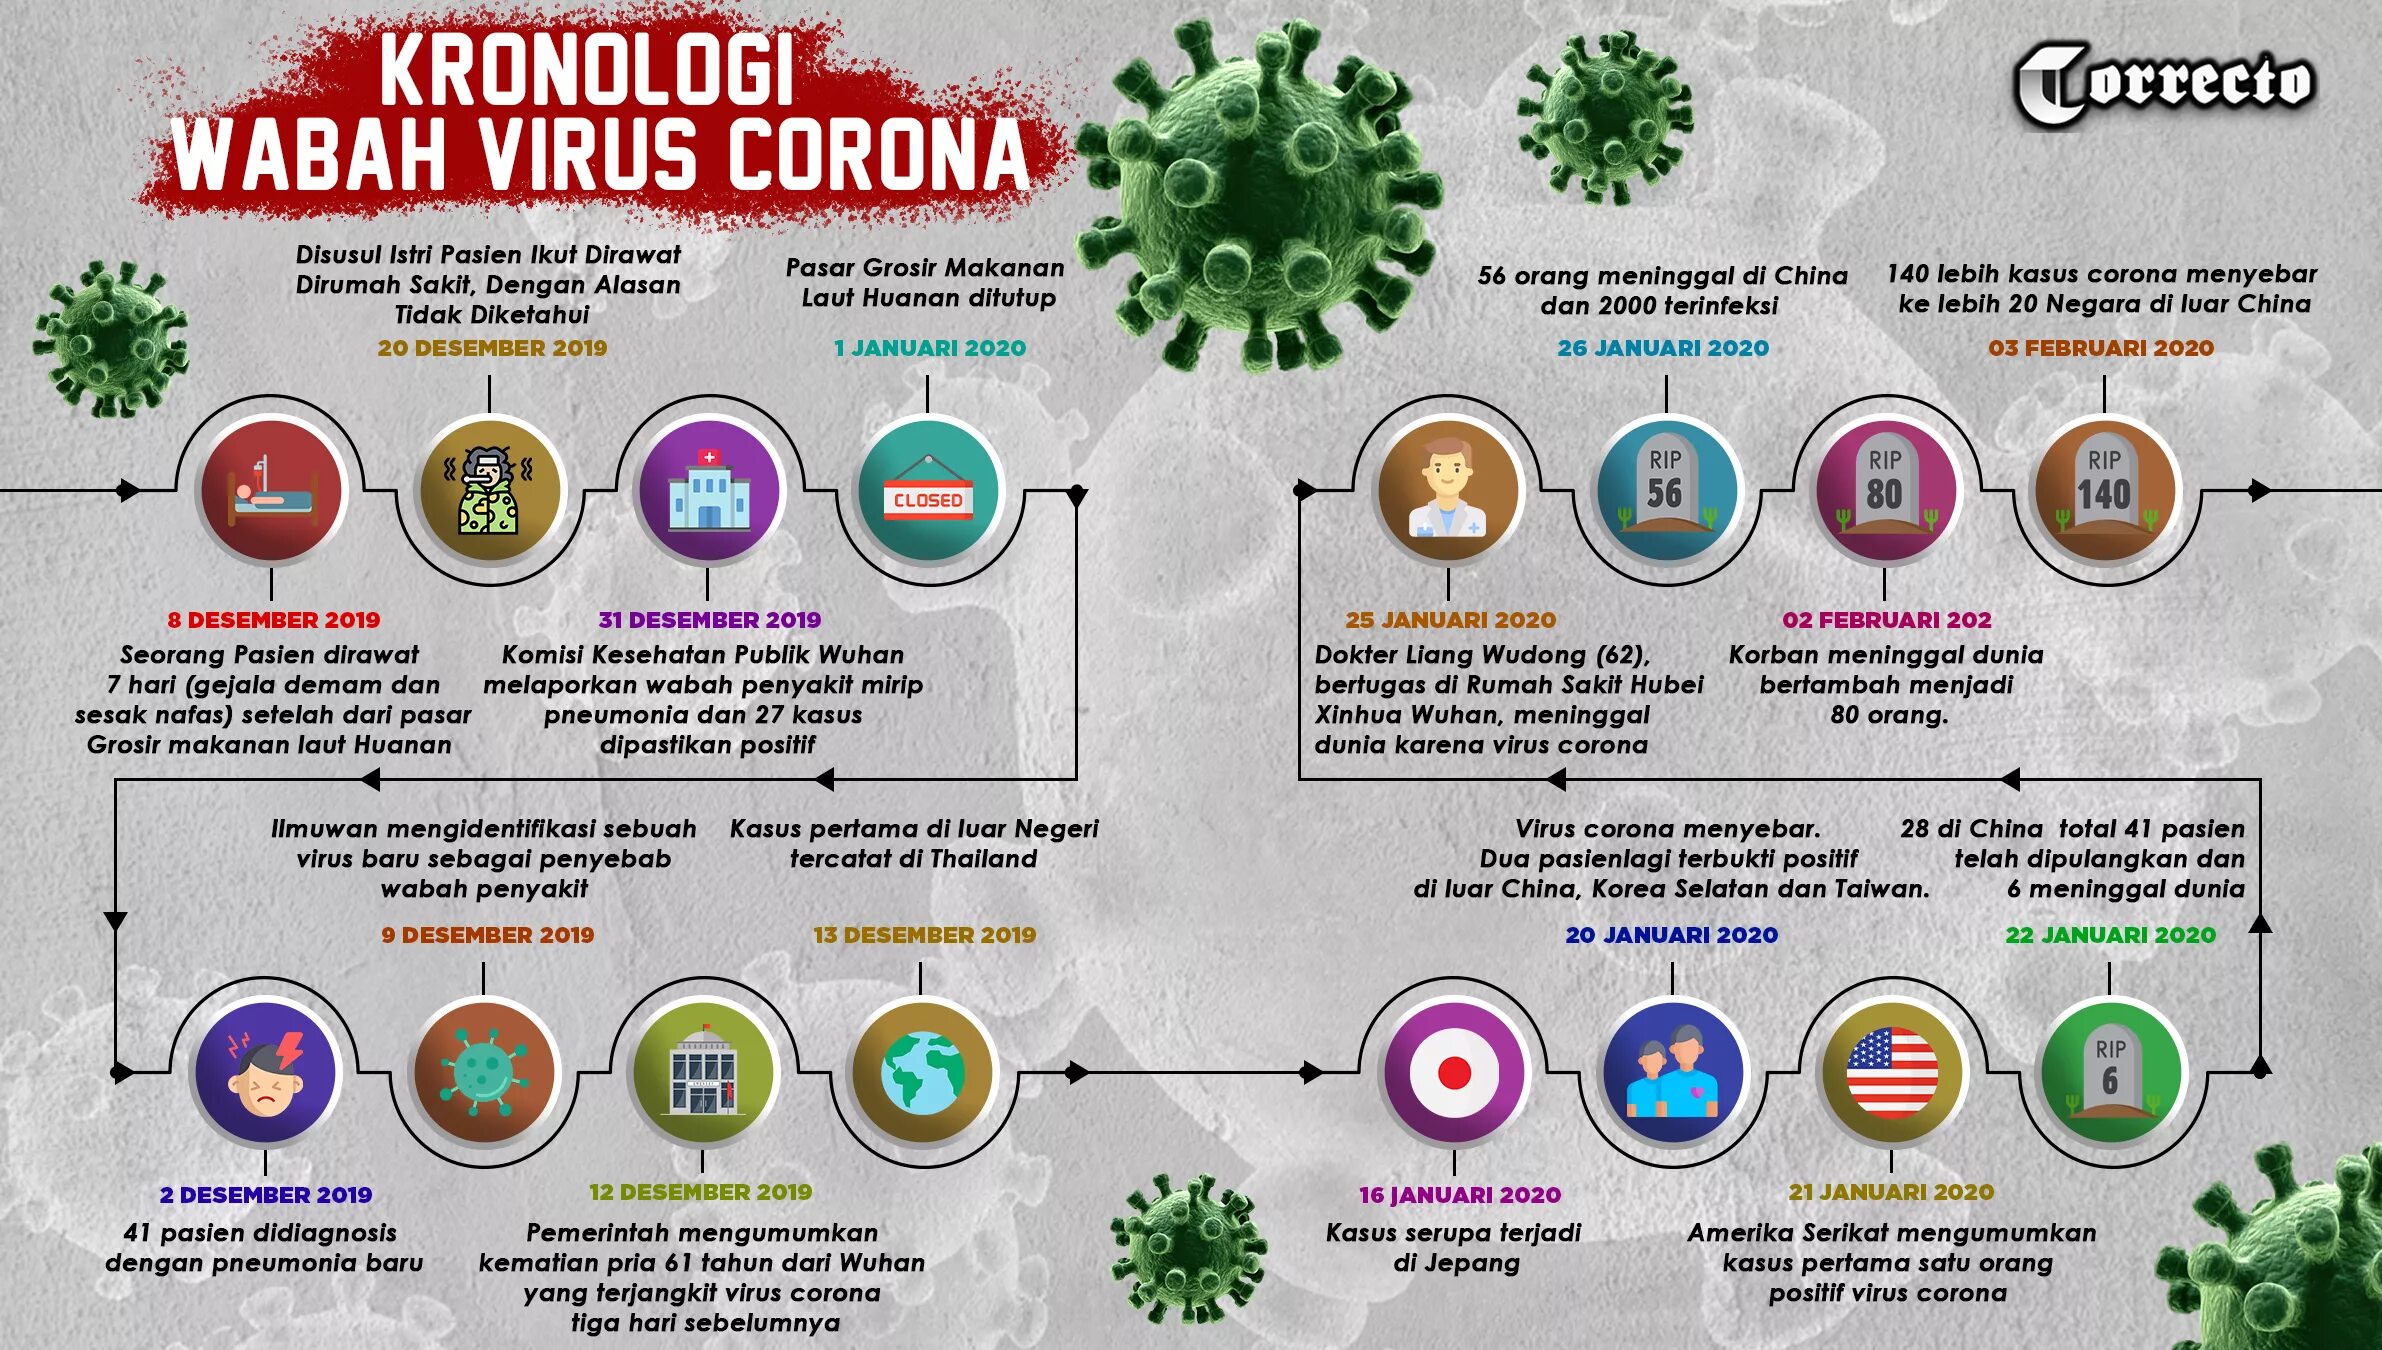 Коронавирус. Вирус коронавирус. Как выглядит коронавирус. Плакат вирусы.